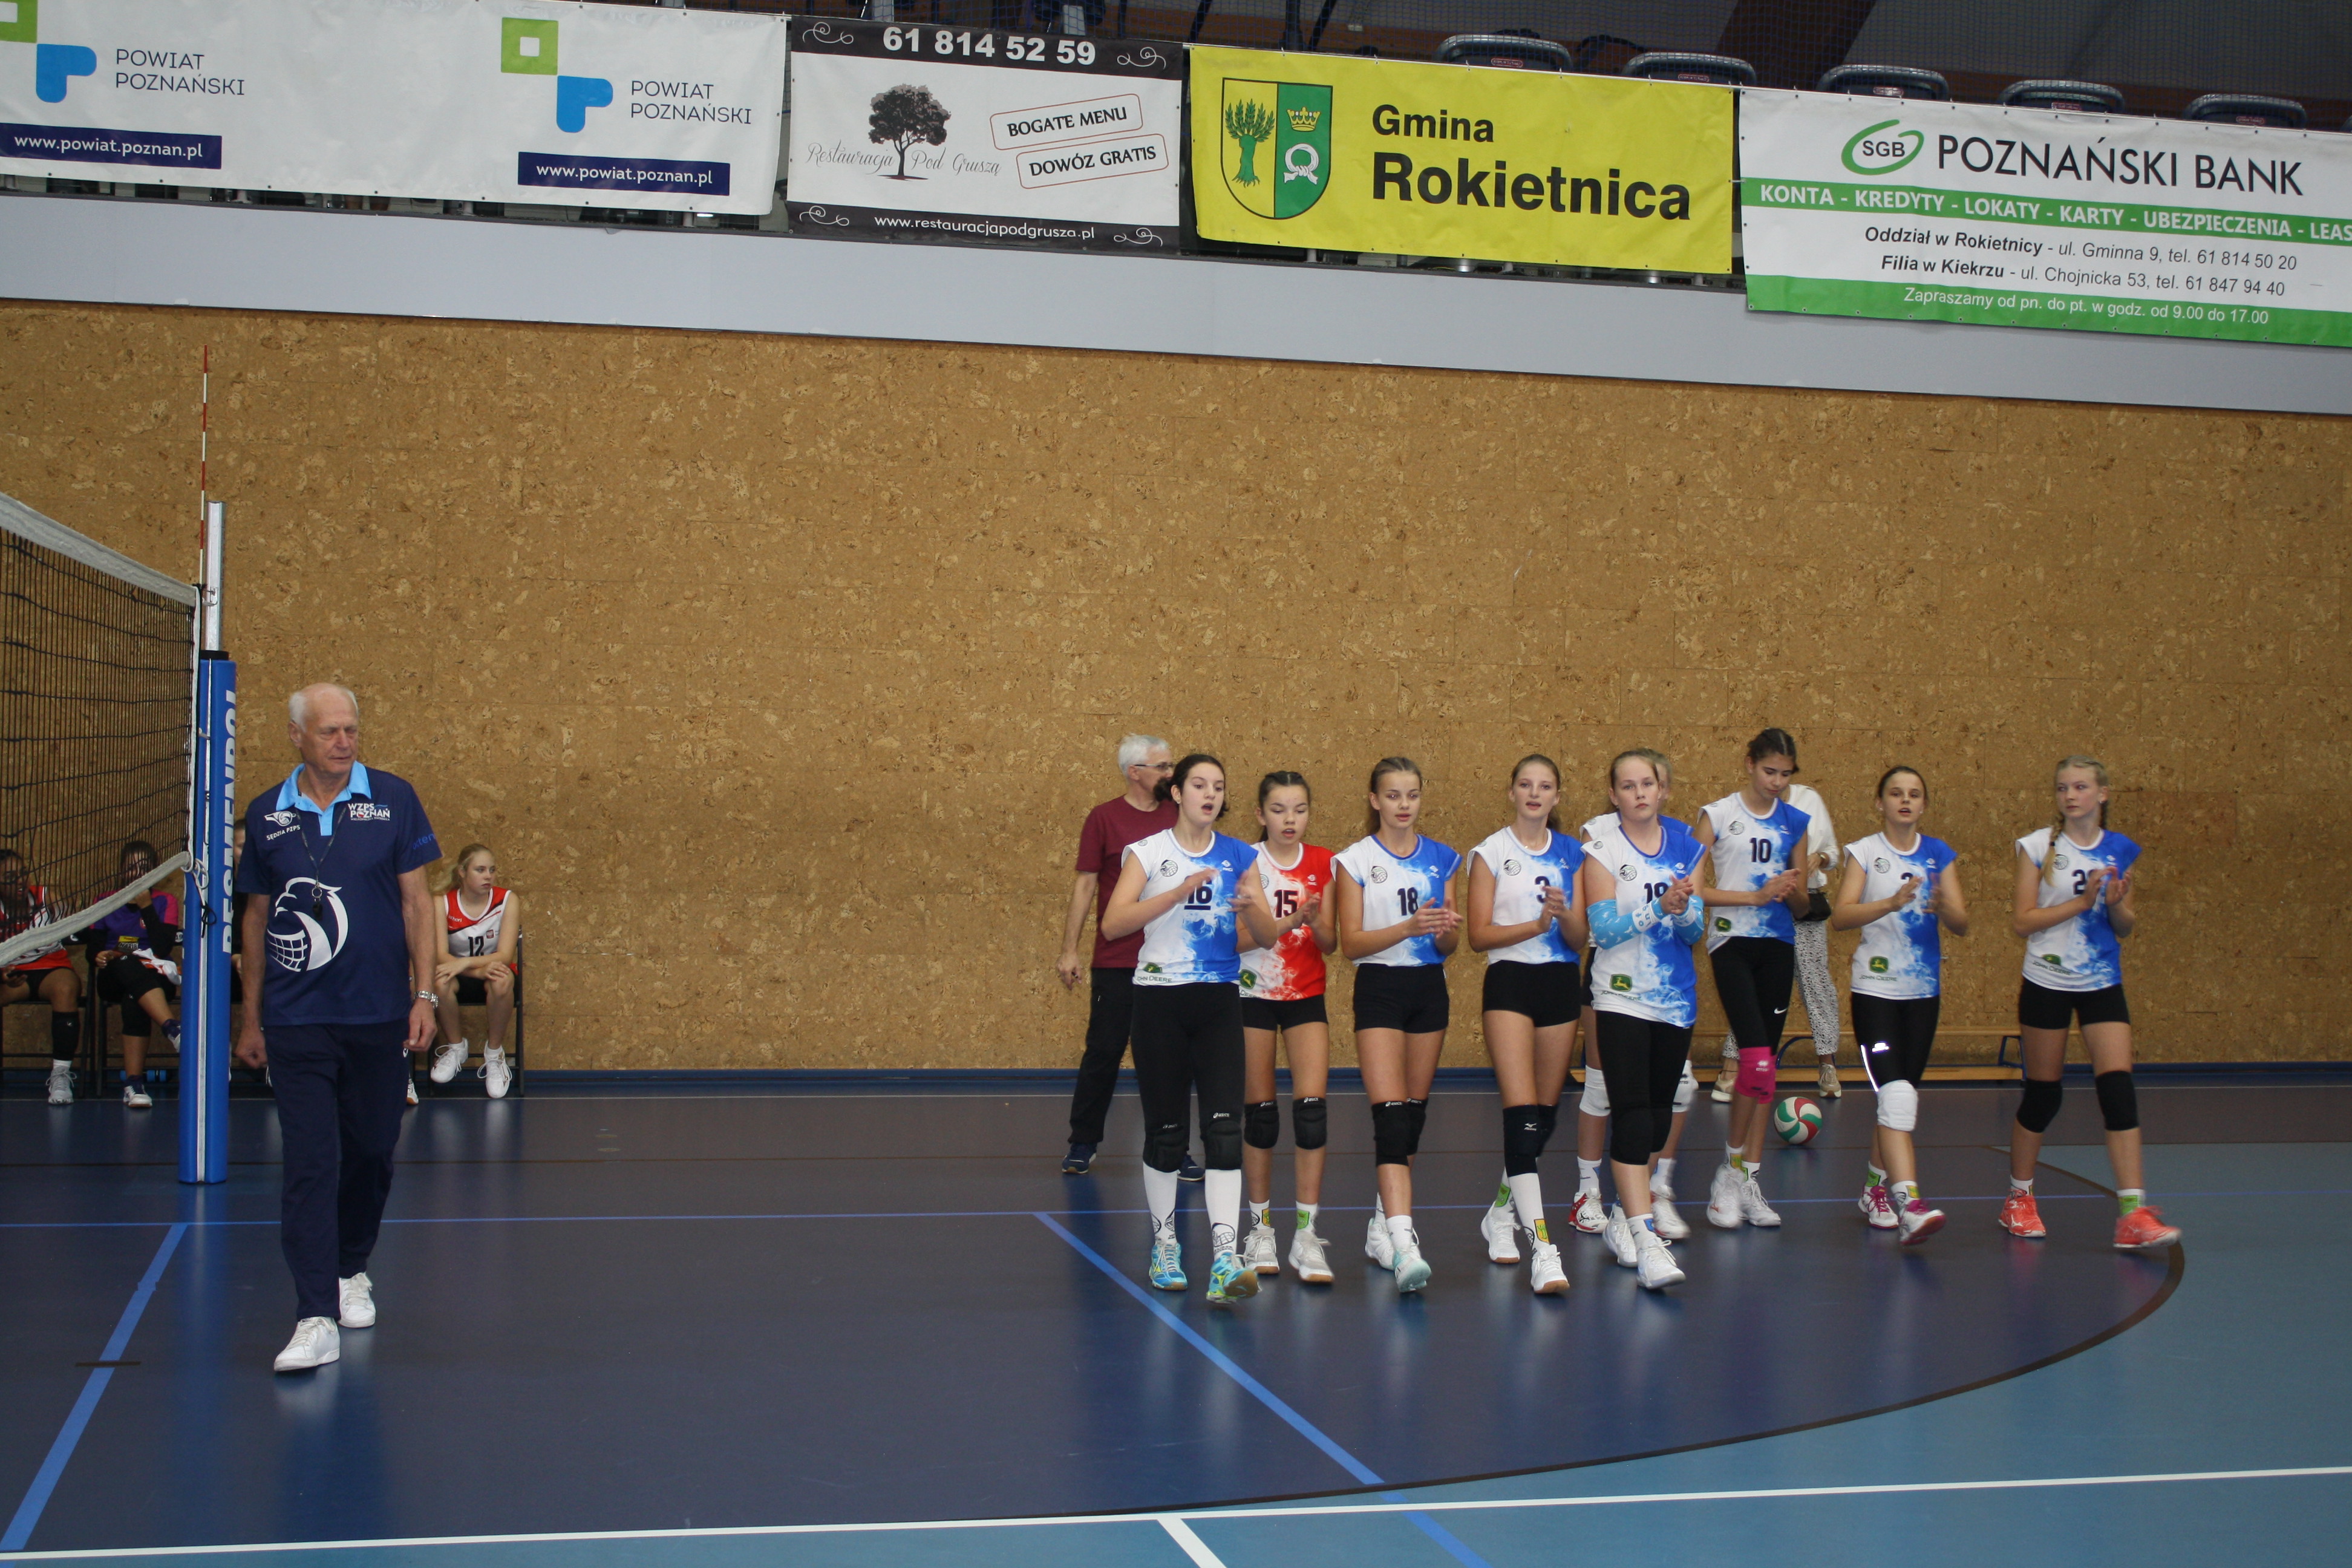 Na zdjęciu zawodniczki UKS Lider podczas Lider Cup - turnieju siatkówki dziewcząt. Za nimi trener - pan Piotr Paupa, po lewej stronie sędzia.